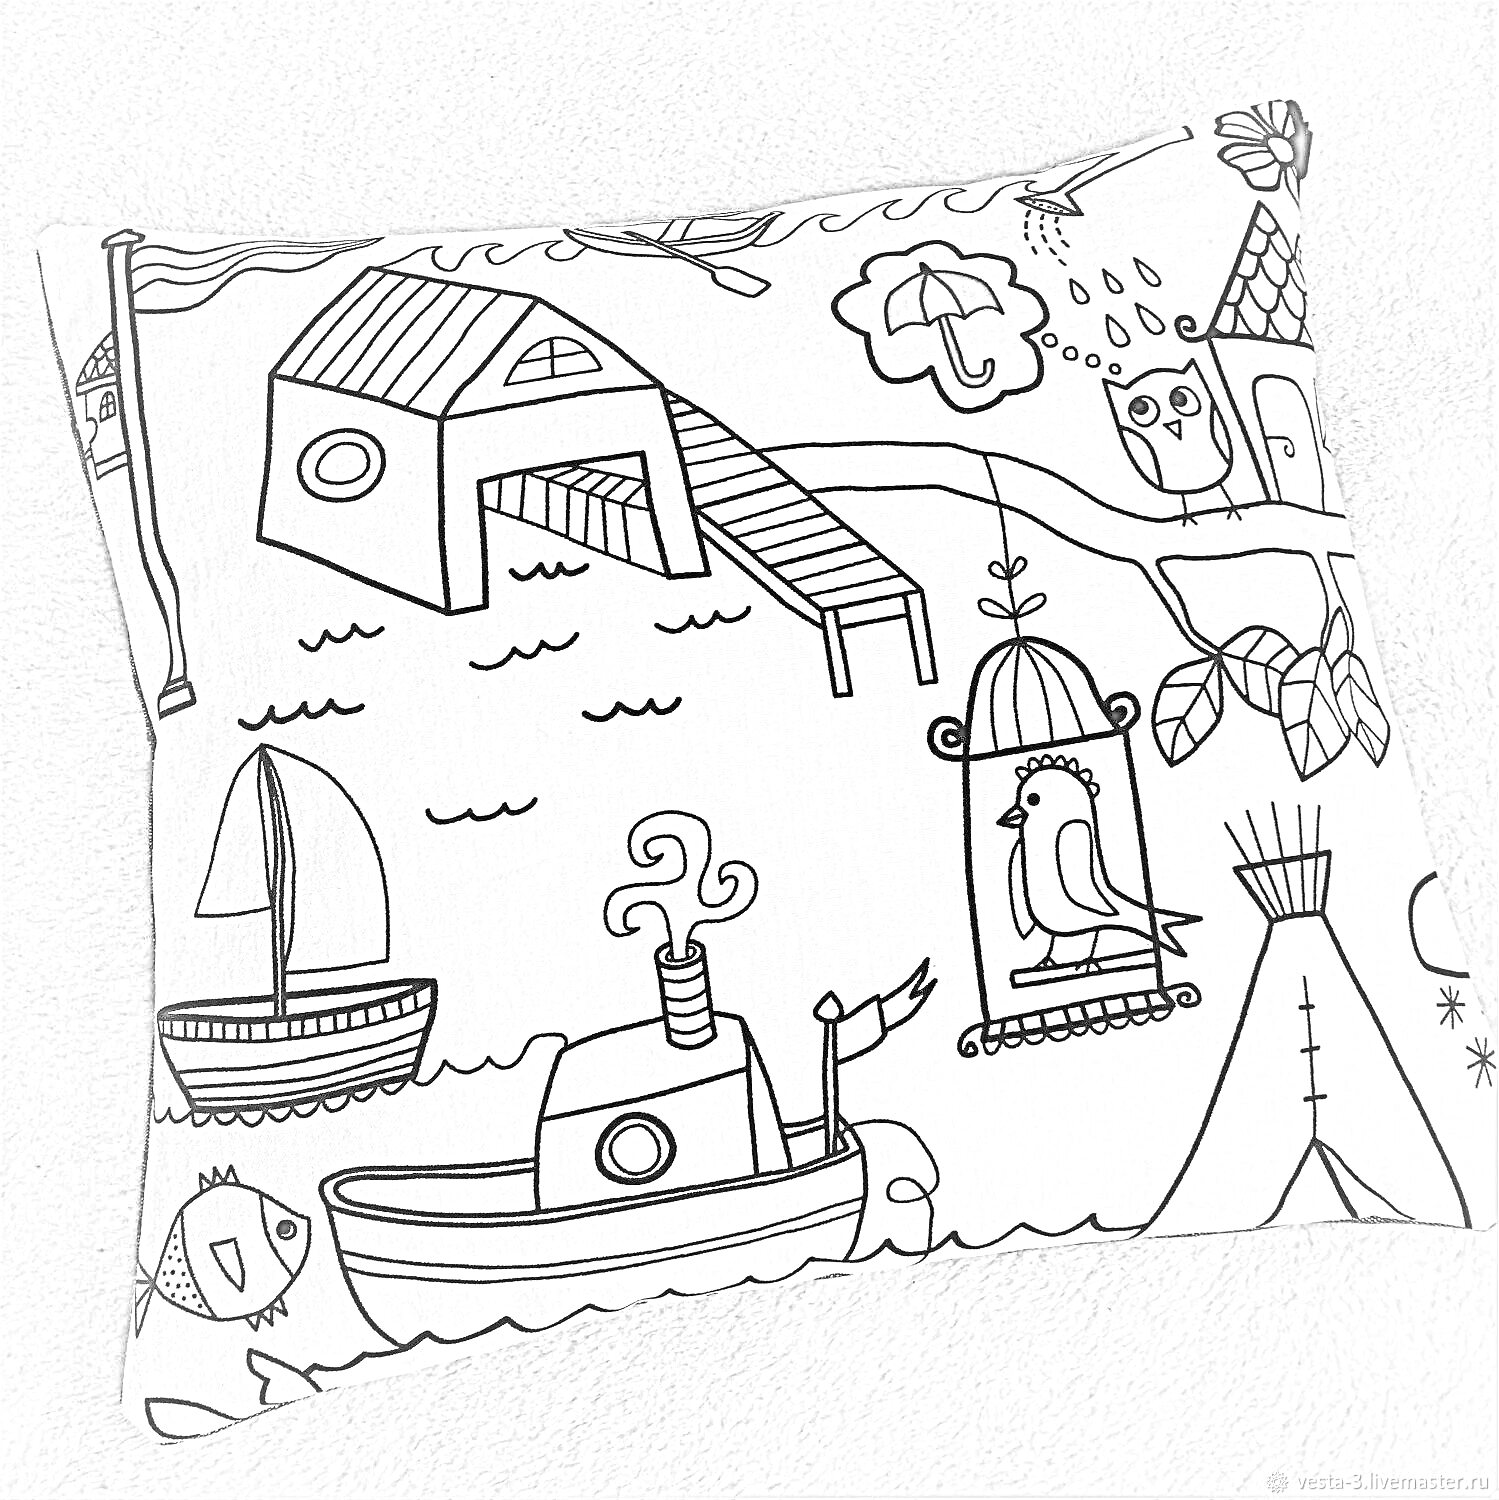 Раскраска наволочка с домиком у моря, парусником, рыбой, кораблем, клеткой с птицей, типи, совой и зонтиком